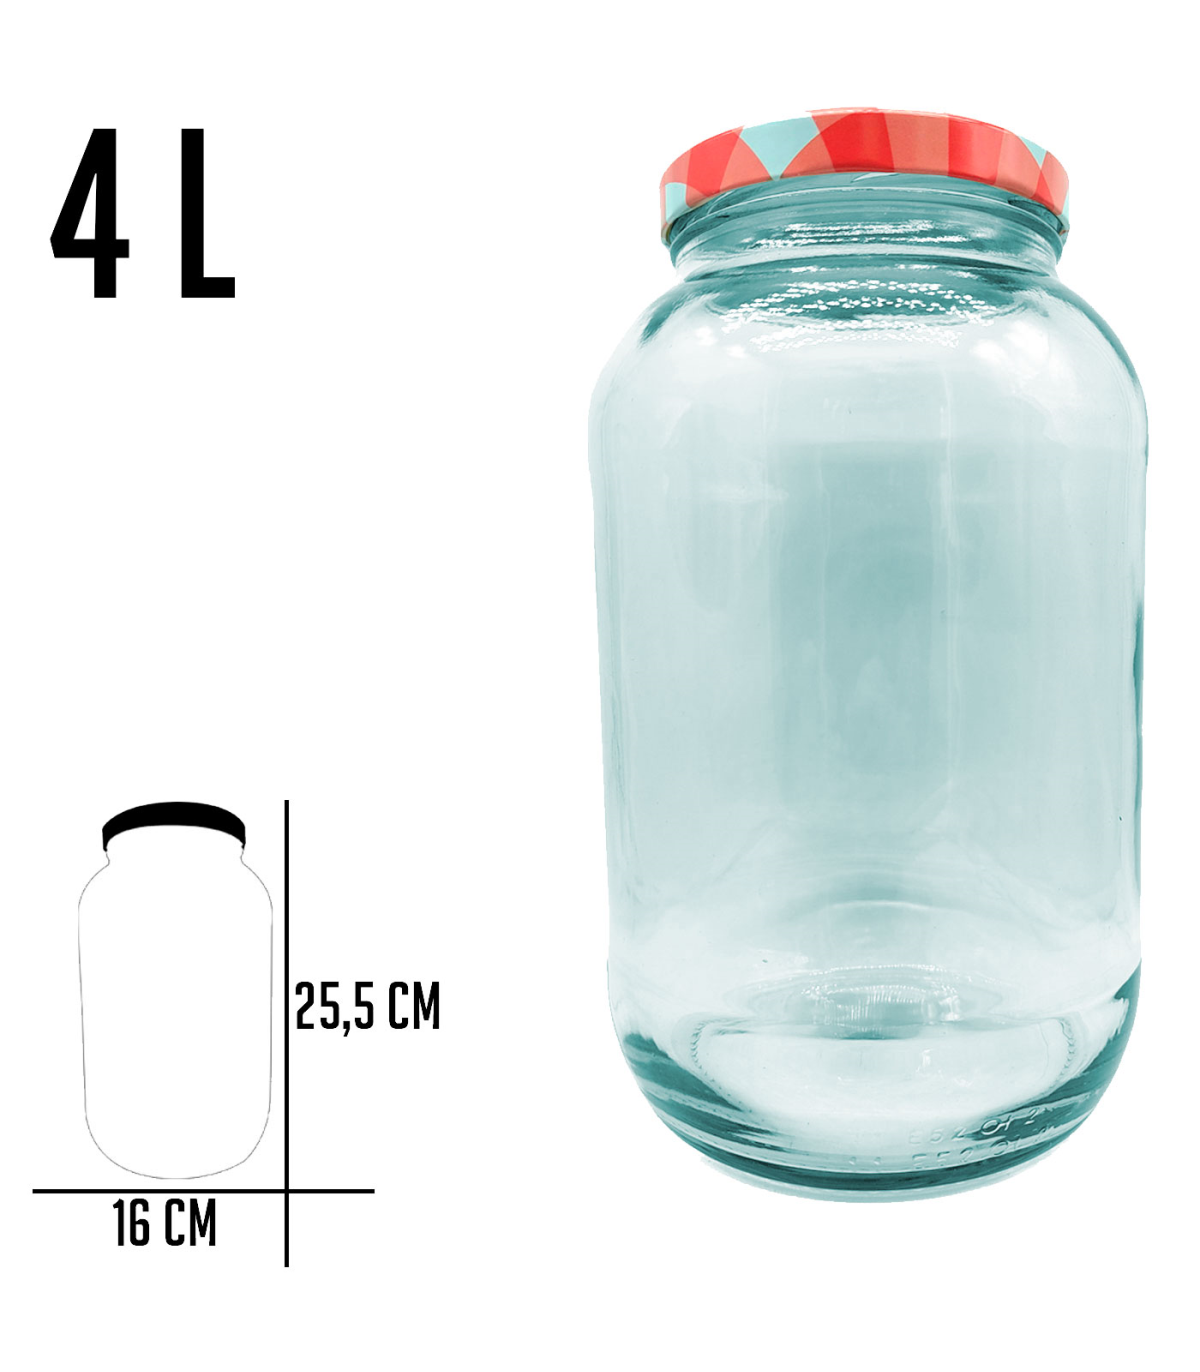 Tradineur - Botella de vidrio multiusos, bote, frasco facetado con